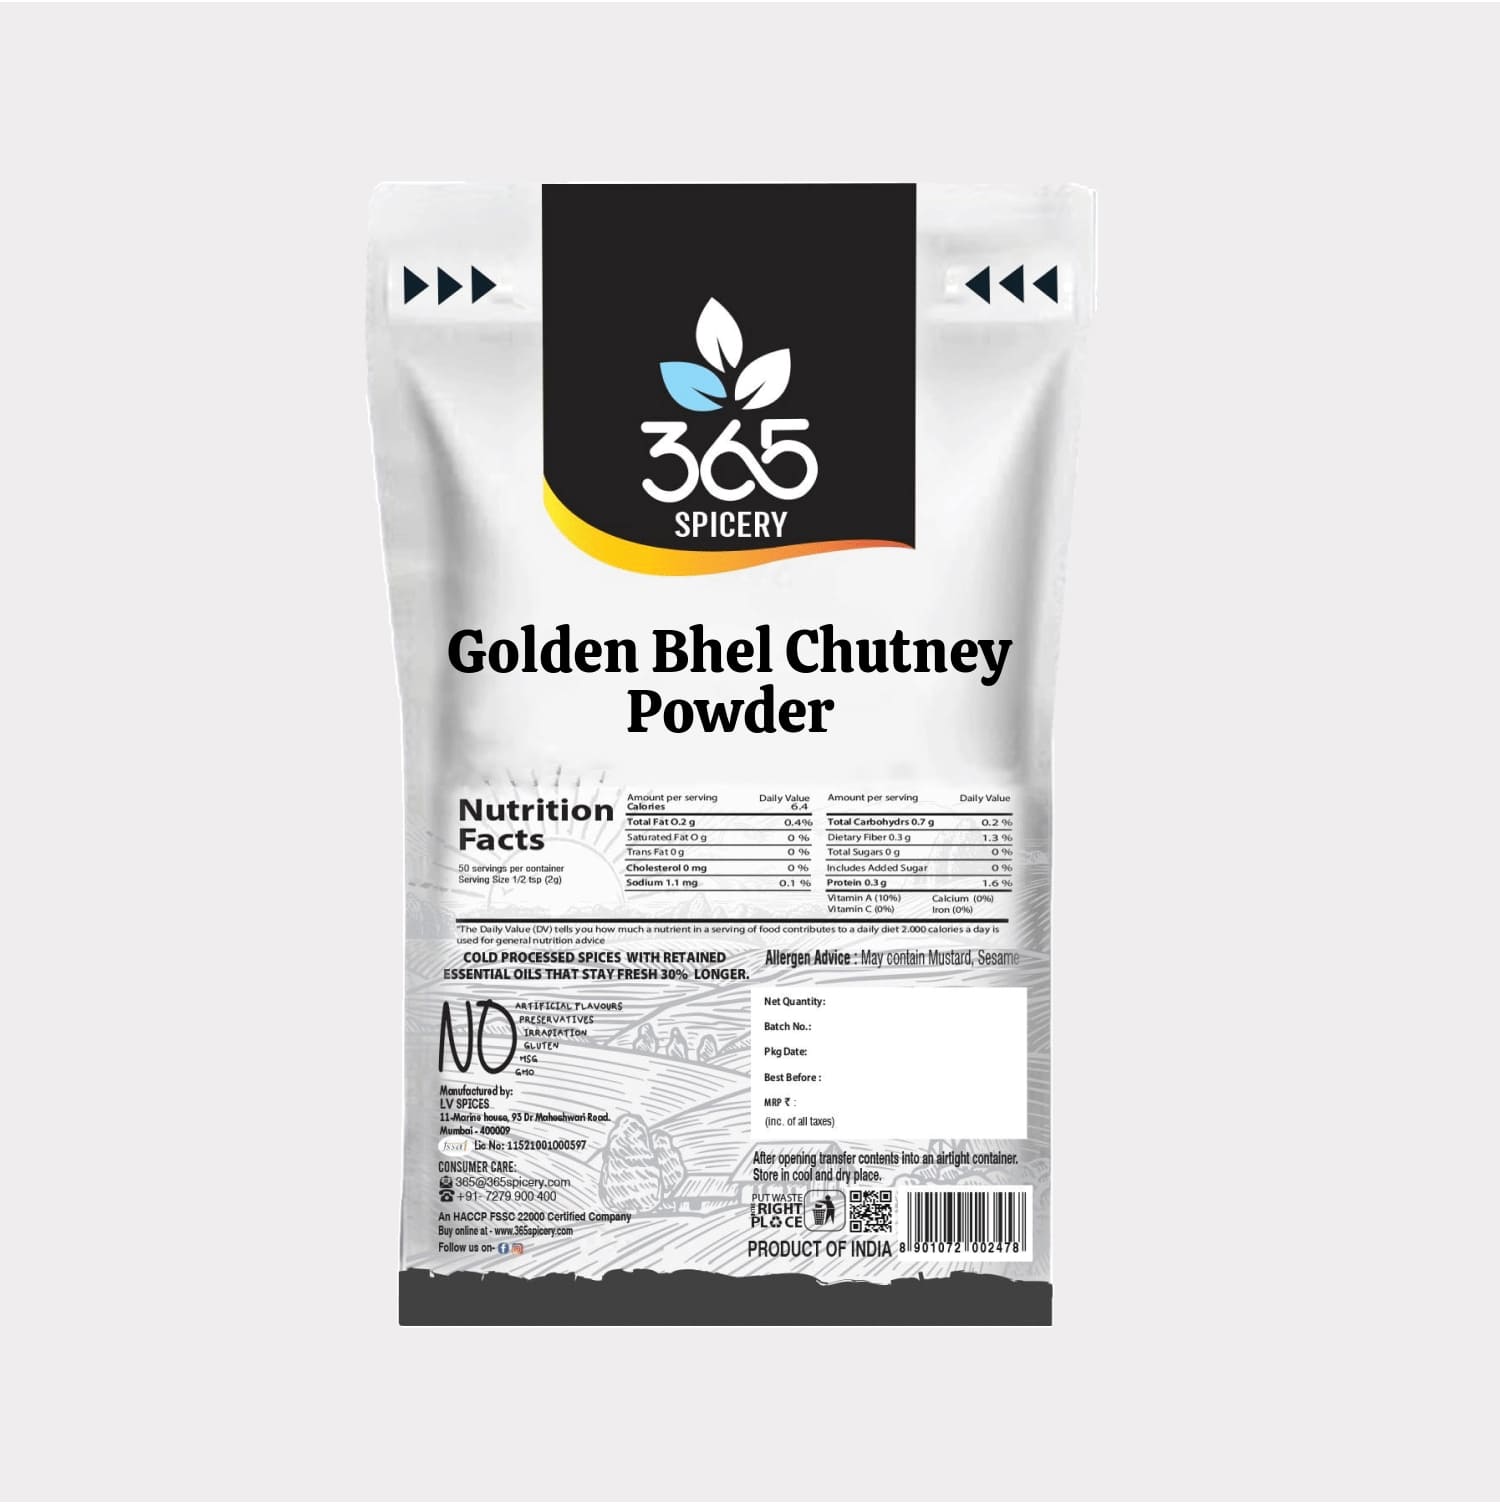 Golden Bhel Chutney Powder